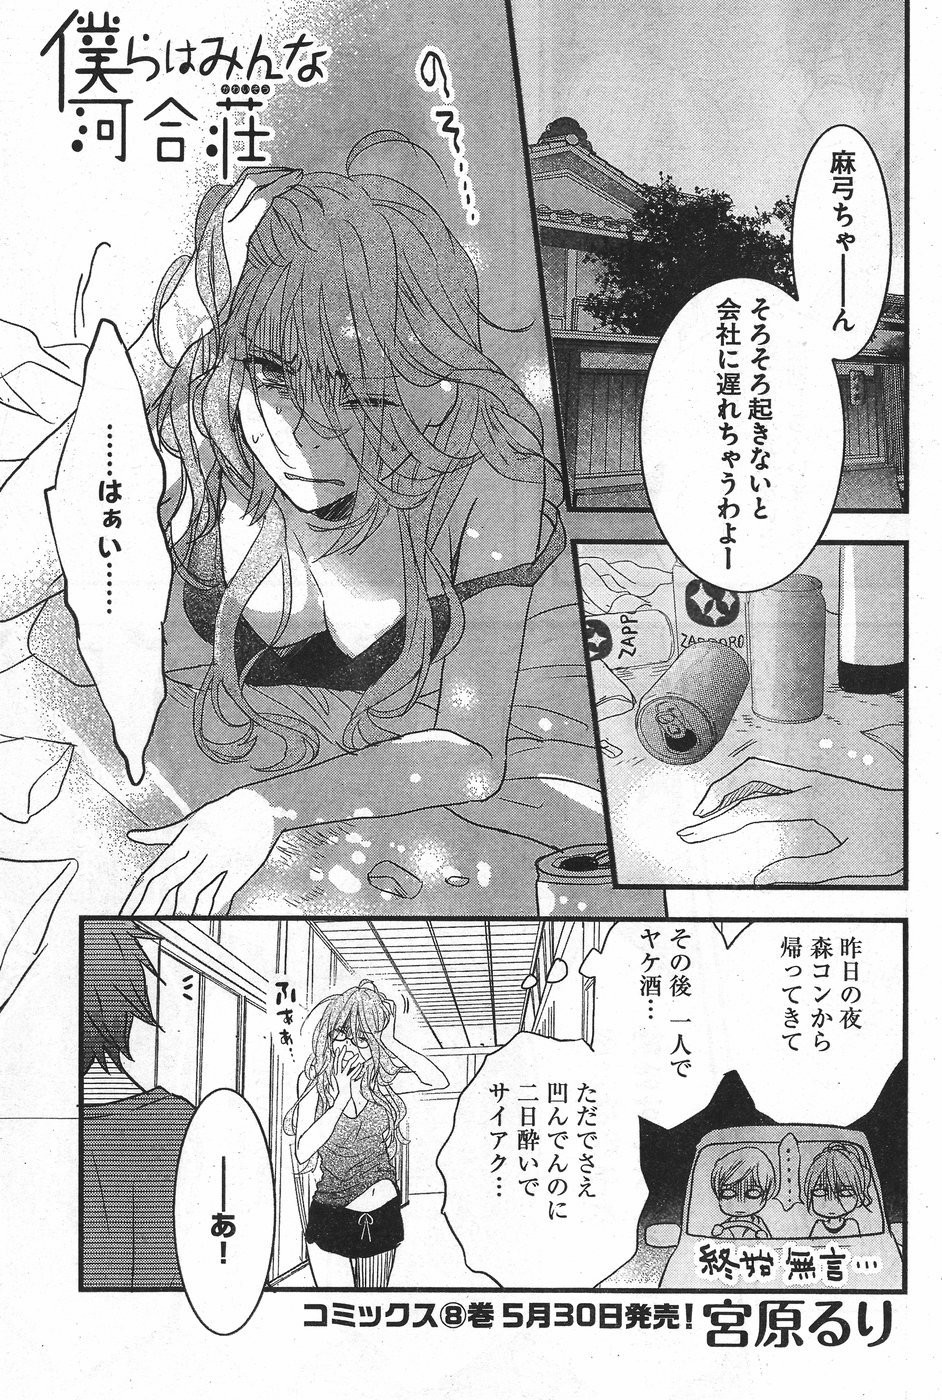 Bokura wa Minna Kawaisou - Chapter 71 - Page 1